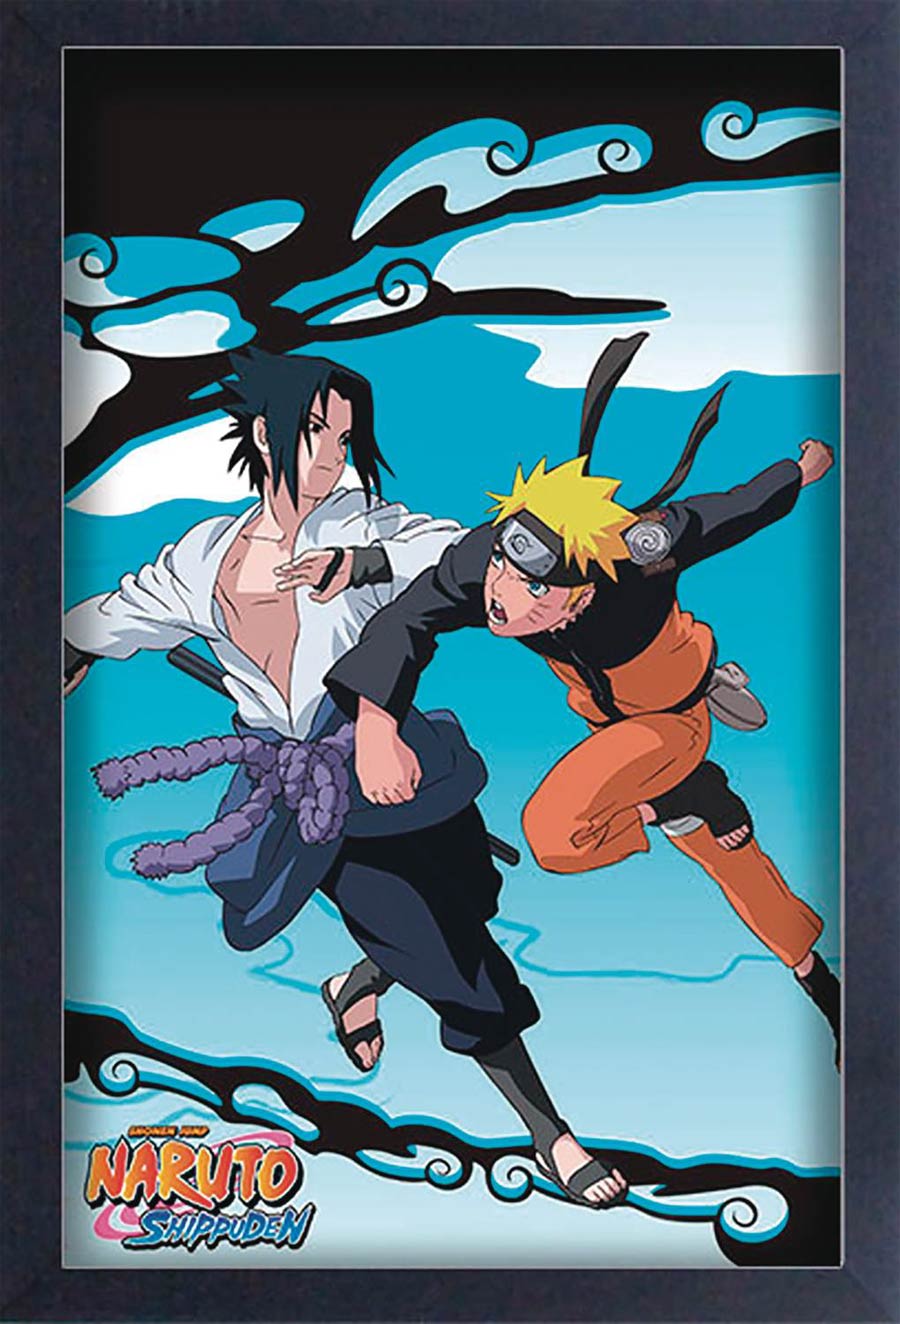 Naruto Shippuden Sasuke vs Naruto 11x17-Inch Framed Poster